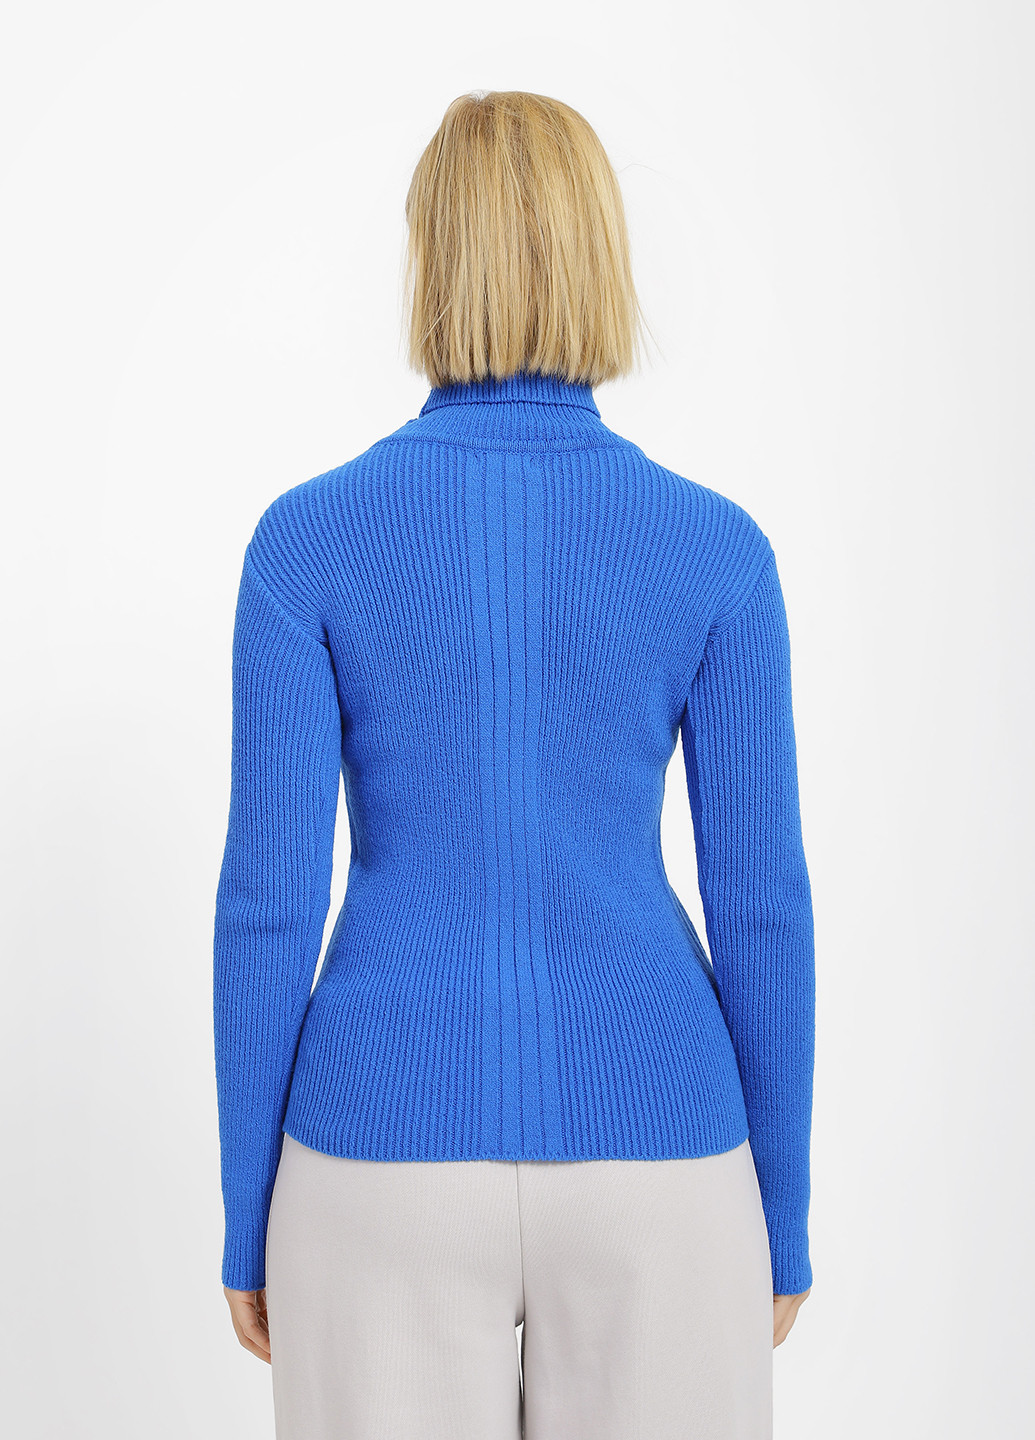 Синій зимовий светр Sewel